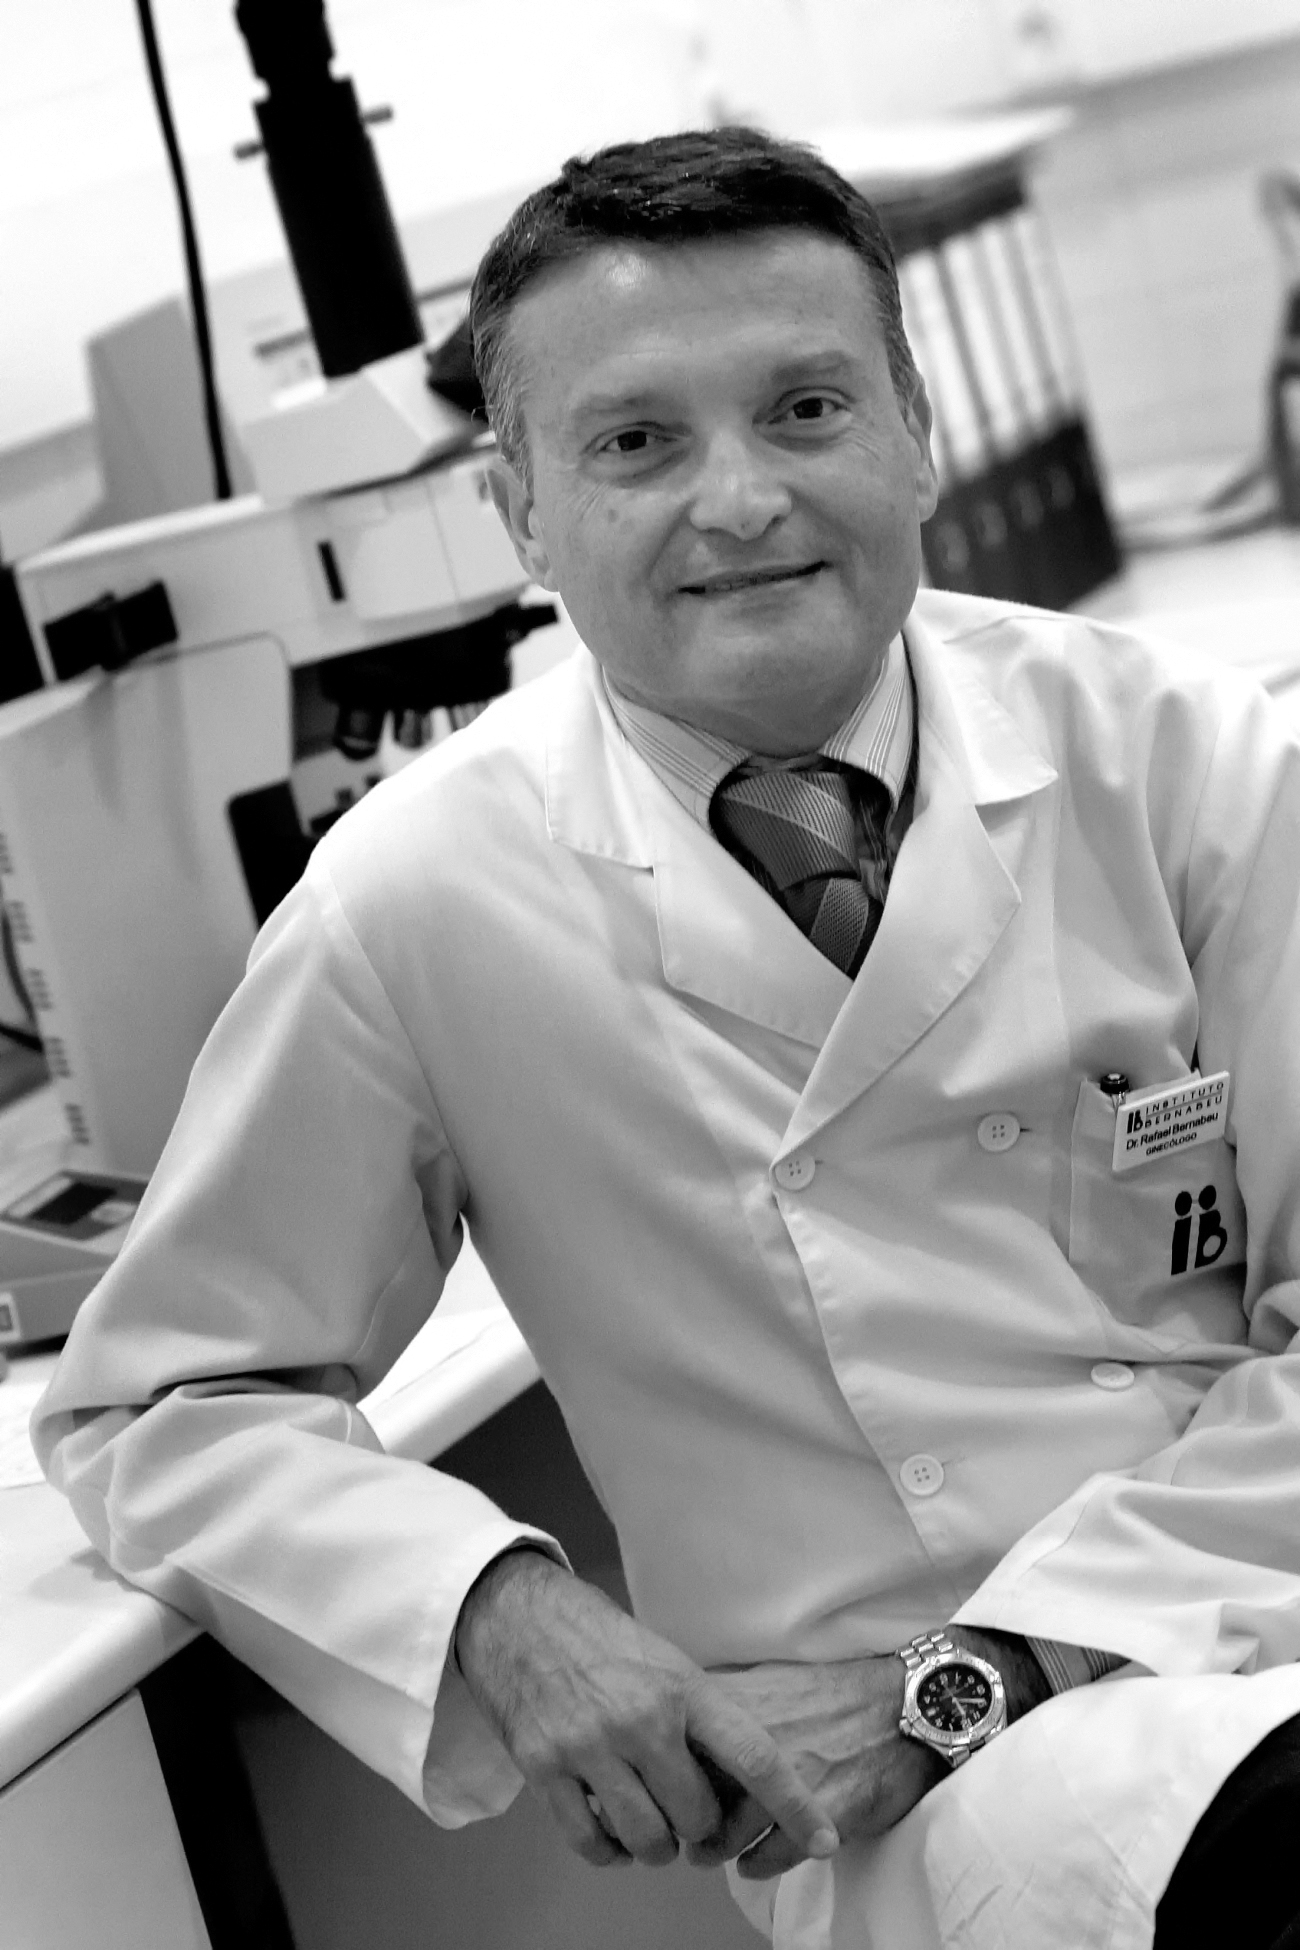 Rafael Bernabeu, MD, PhD